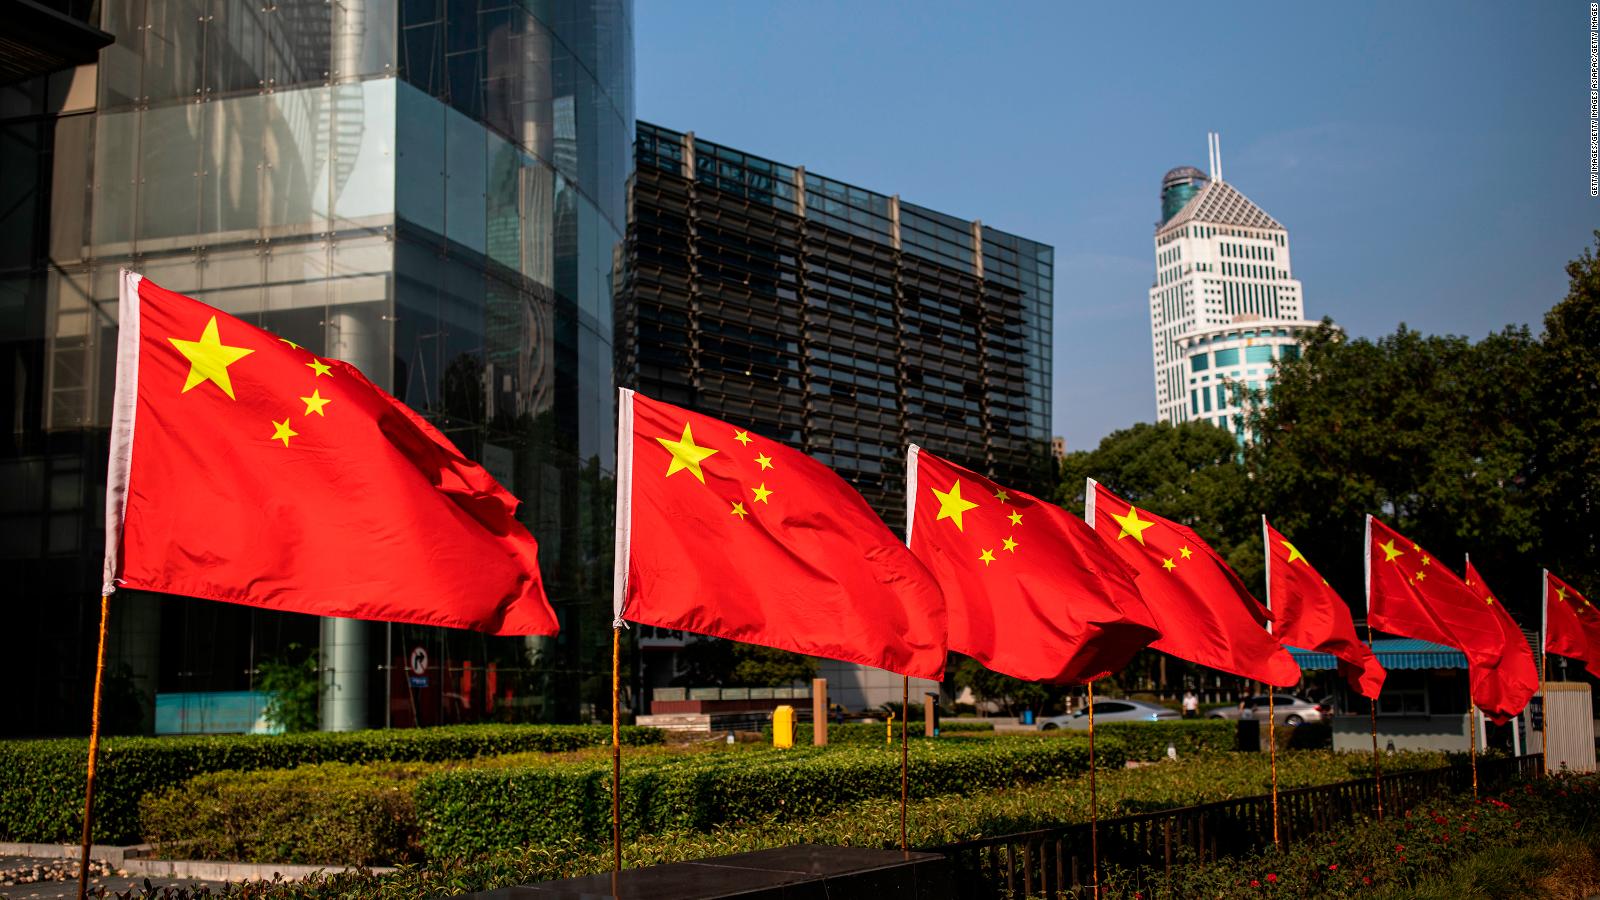 Pekín ofrecerá un bono mensual de 6 dólares estadounidenses para compensar la inflación, pero la ira crece en las redes |  Video